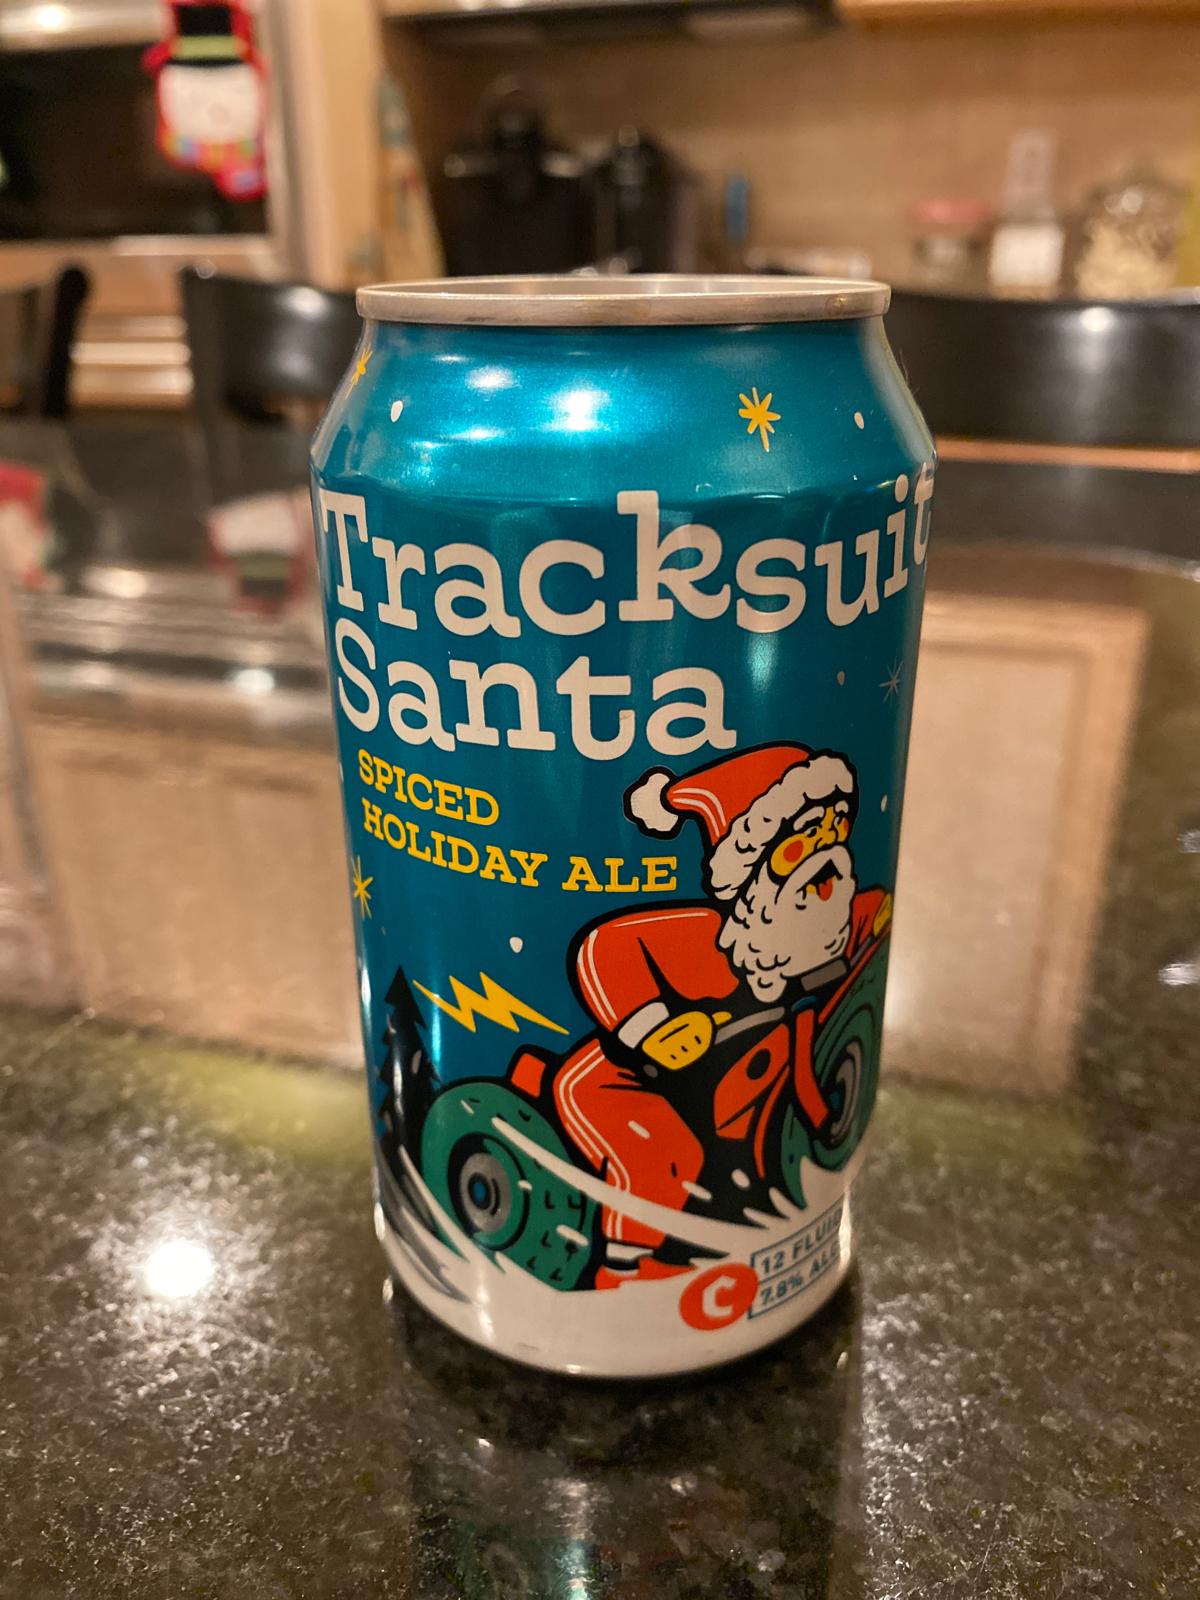 Tracksuit Santa